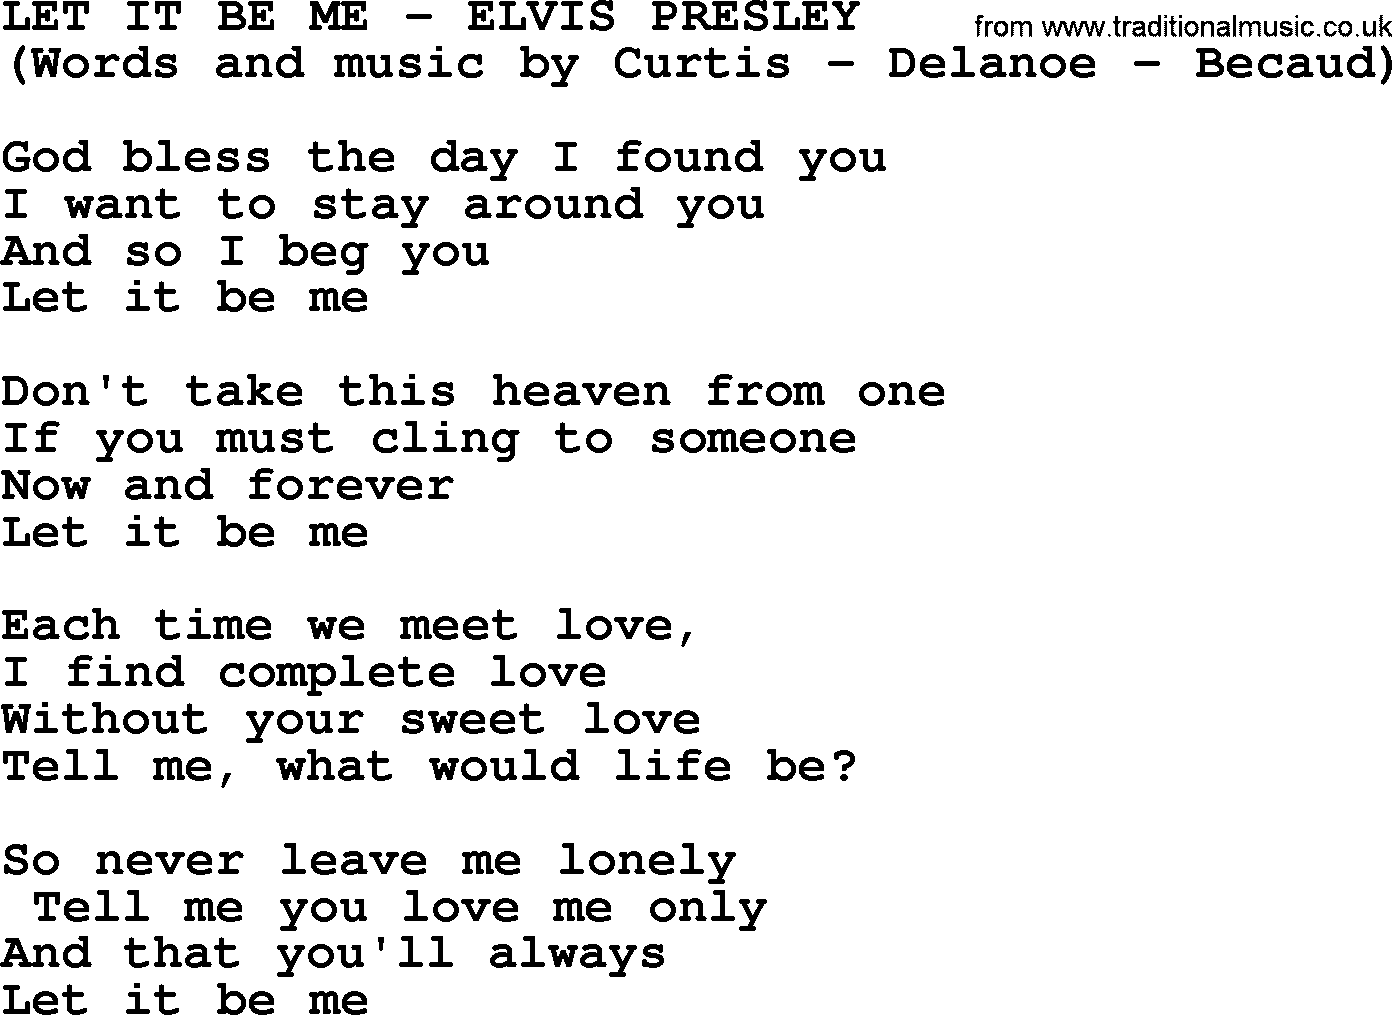 Let It Be Me by Elvis Presley - lyrics